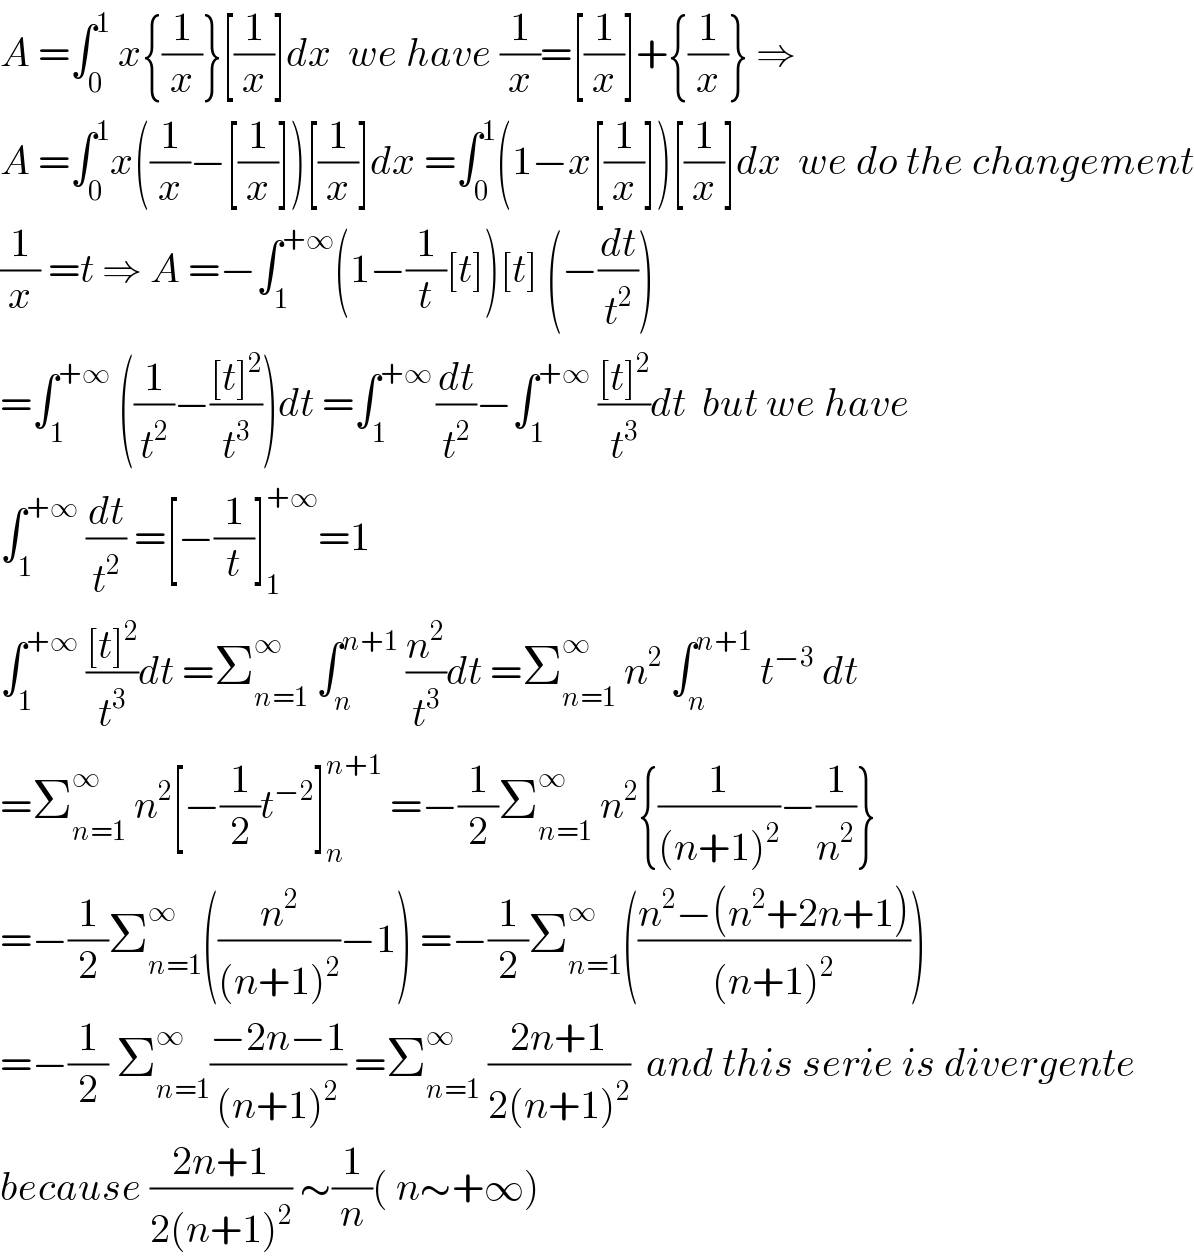 A =∫_0 ^1  x{(1/x)}[(1/x)]dx  we have (1/x)=[(1/x)]+{(1/x)} ⇒  A =∫_0 ^1 x((1/x)−[(1/x)])[(1/x)]dx =∫_0 ^1 (1−x[(1/x)])[(1/x)]dx  we do the changement  (1/x) =t ⇒ A =−∫_1 ^(+∞) (1−(1/t)[t])[t] (−(dt/t^2 ))  =∫_1 ^(+∞)  ((1/t^2 )−(([t]^2 )/t^3 ))dt =∫_1 ^(+∞ ) (dt/t^2 )−∫_1 ^(+∞)  (([t]^2 )/t^3 )dt  but we have  ∫_1 ^(+∞)  (dt/t^2 ) =[−(1/t)]_1 ^(+∞) =1  ∫_1 ^(+∞)  (([t]^2 )/t^3 )dt =Σ_(n=1) ^∞  ∫_n ^(n+1)  (n^2 /t^3 )dt =Σ_(n=1) ^∞  n^2  ∫_n ^(n+1)  t^(−3)  dt  =Σ_(n=1) ^∞  n^2 [−(1/2)t^(−2) ]_n ^(n+1)  =−(1/2)Σ_(n=1) ^∞  n^2 {(1/((n+1)^2 ))−(1/n^2 )}  =−(1/2)Σ_(n=1) ^∞ ((n^2 /((n+1)^2 ))−1) =−(1/2)Σ_(n=1) ^∞ (((n^2 −(n^2 +2n+1))/((n+1)^2 )))  =−(1/2) Σ_(n=1) ^∞ ((−2n−1)/((n+1)^2 )) =Σ_(n=1) ^∞  ((2n+1)/(2(n+1)^2 ))  and this serie is divergente  because ((2n+1)/(2(n+1)^2 )) ∼(1/n)( n∼+∞)  